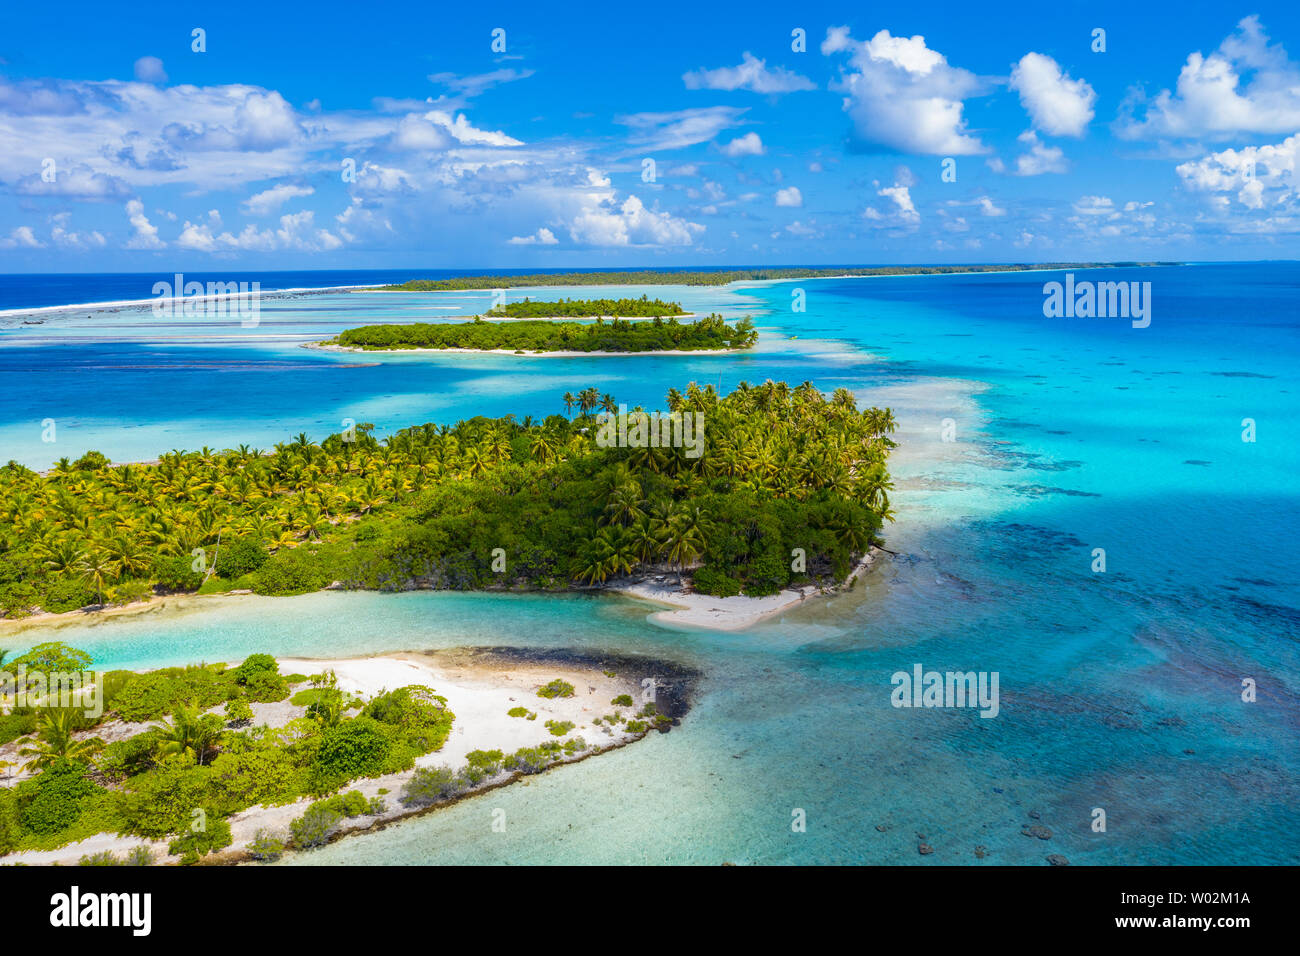 Drone vidéo aérienne de l'atoll de Rangiroa island motu et de récifs coralliens en Polynésie française, Tahiti. Nature paysage incroyable avec blue lagoon et l'océan Pacifique. Voyage Tropical paradise dans les îles Tuamotu. Banque D'Images